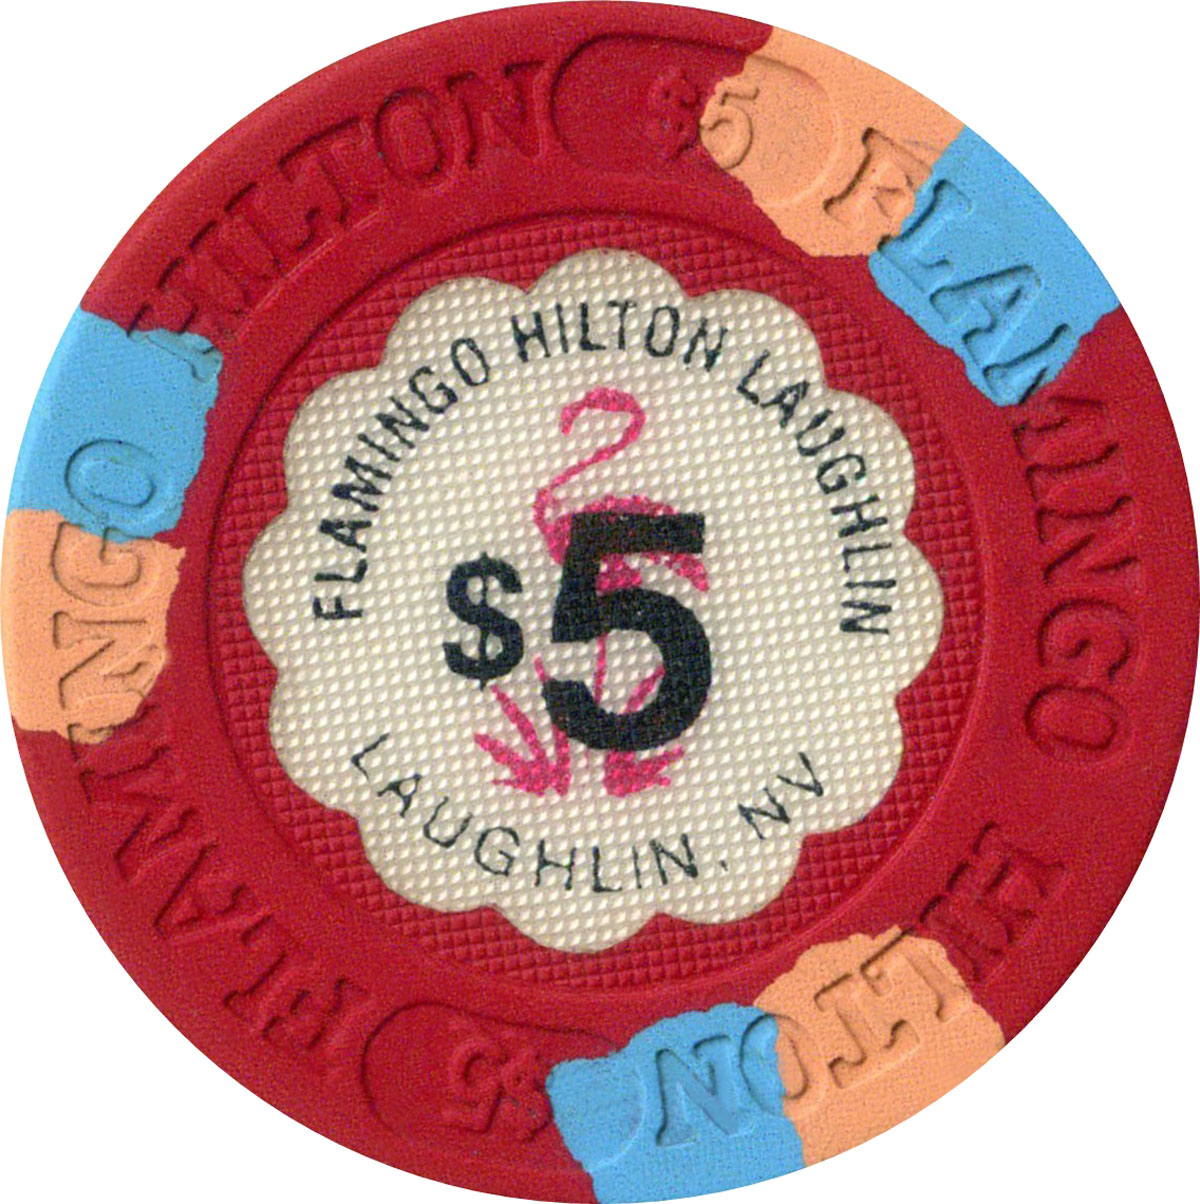 Flamingo Hilton Laughlin, NV $7 Casino Gaming Token, Fine 